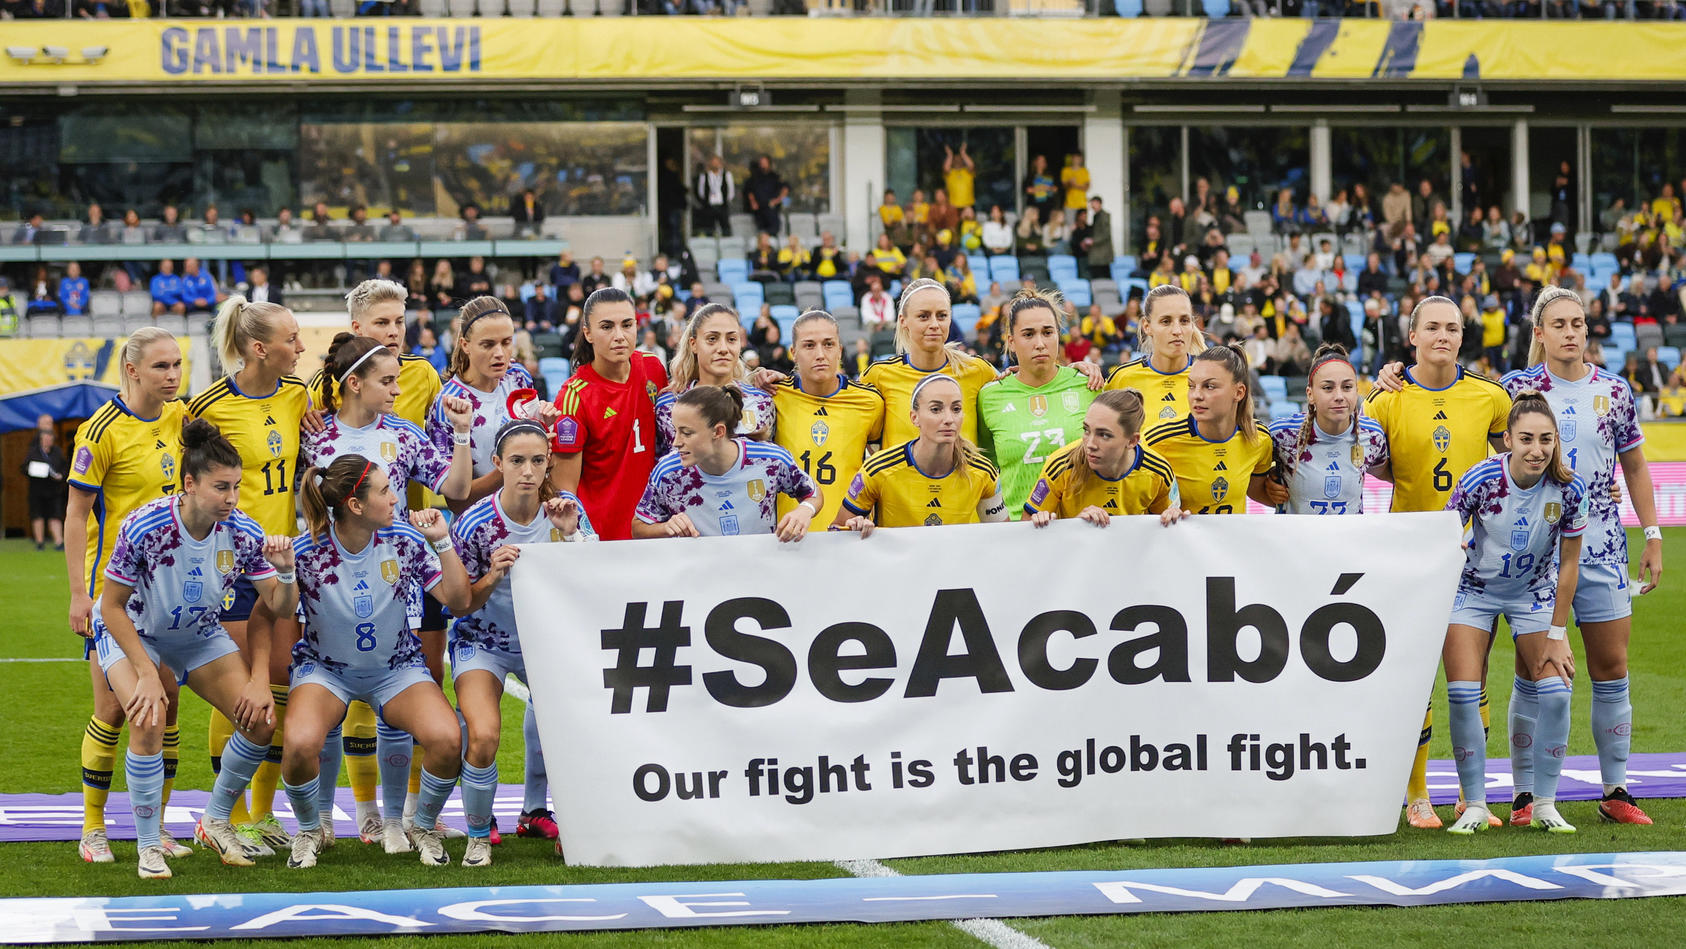 seacabo-schluss-jetzt-gemeinsam-setzten-spanierinnen-und-schwedinnen-vor-dem-anpfiff-ein-zeichen-gegen-sexuelle-gewalt